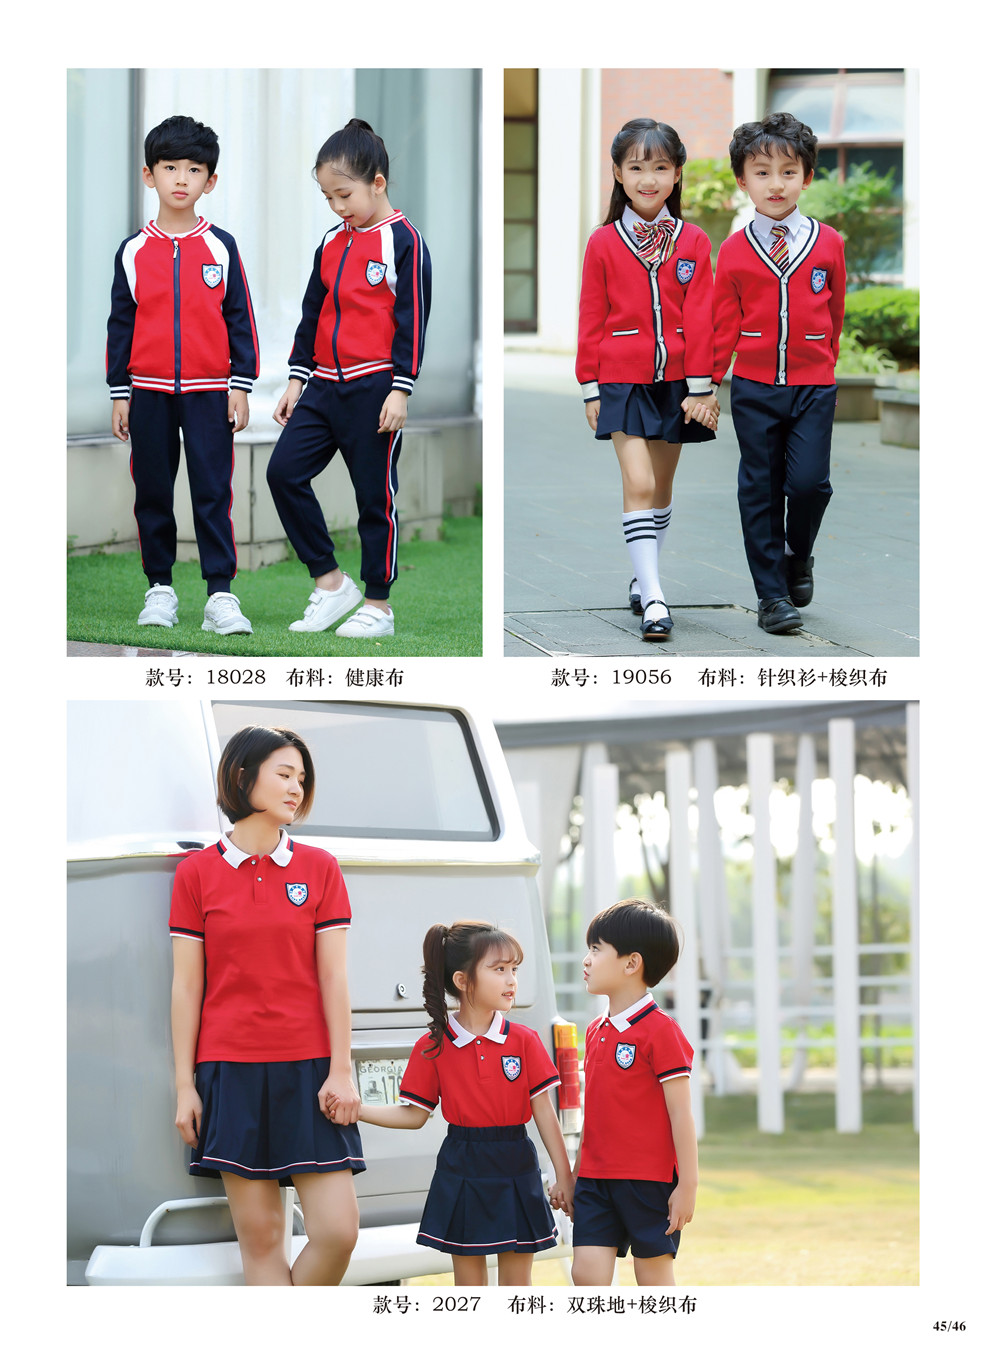 红色运动服套装系列，幼儿园园服热卖款